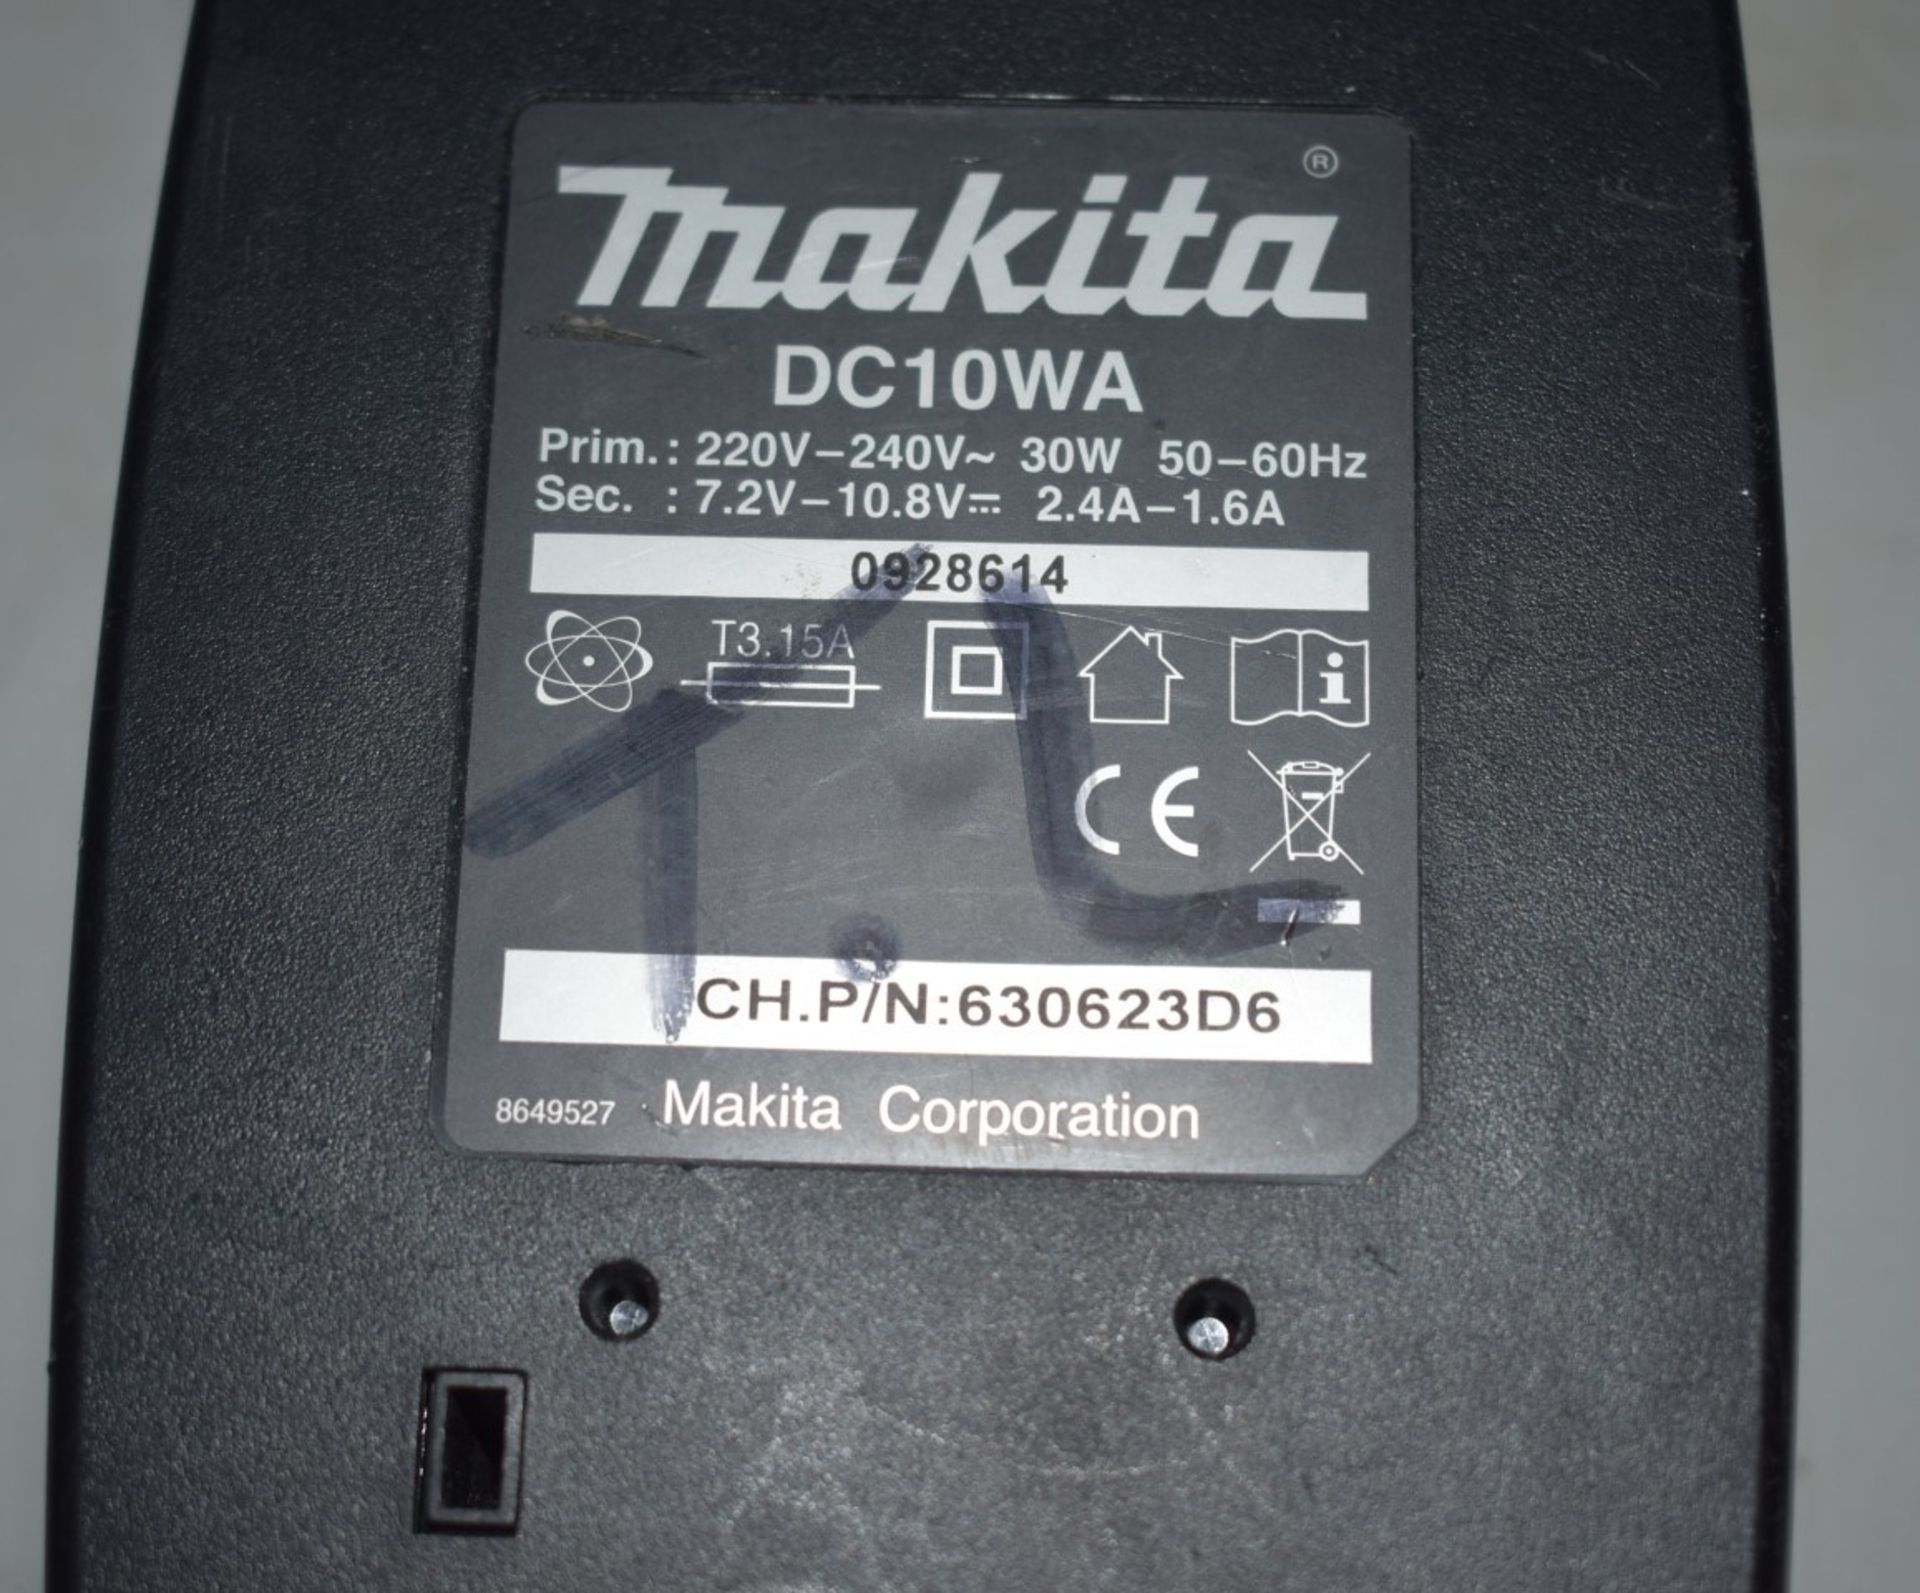 1 x MAKITA DC10WA Li-Ion Charger, 7.2V/10.8V - Model 194589-9 - Ref: DS7533 ALT - CL816 - - Image 2 of 2